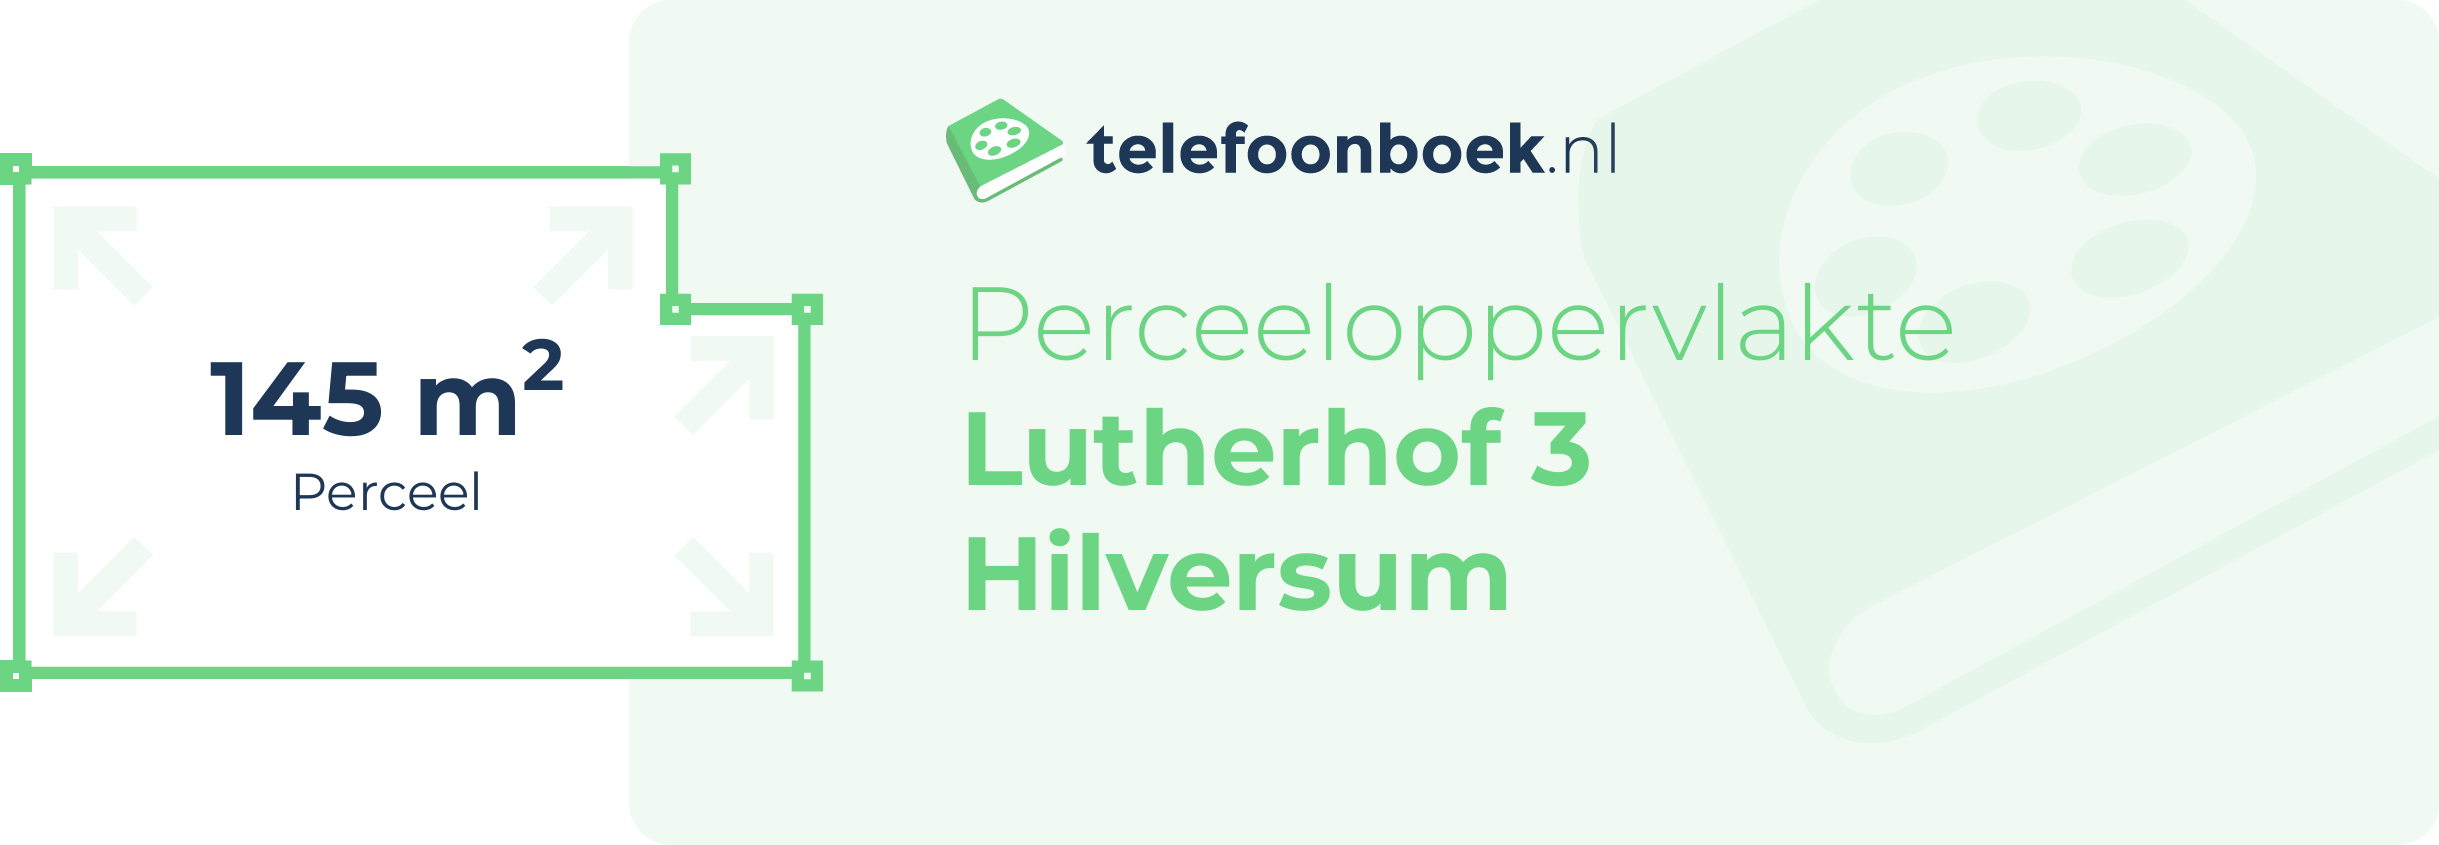 Perceeloppervlakte Lutherhof 3 Hilversum